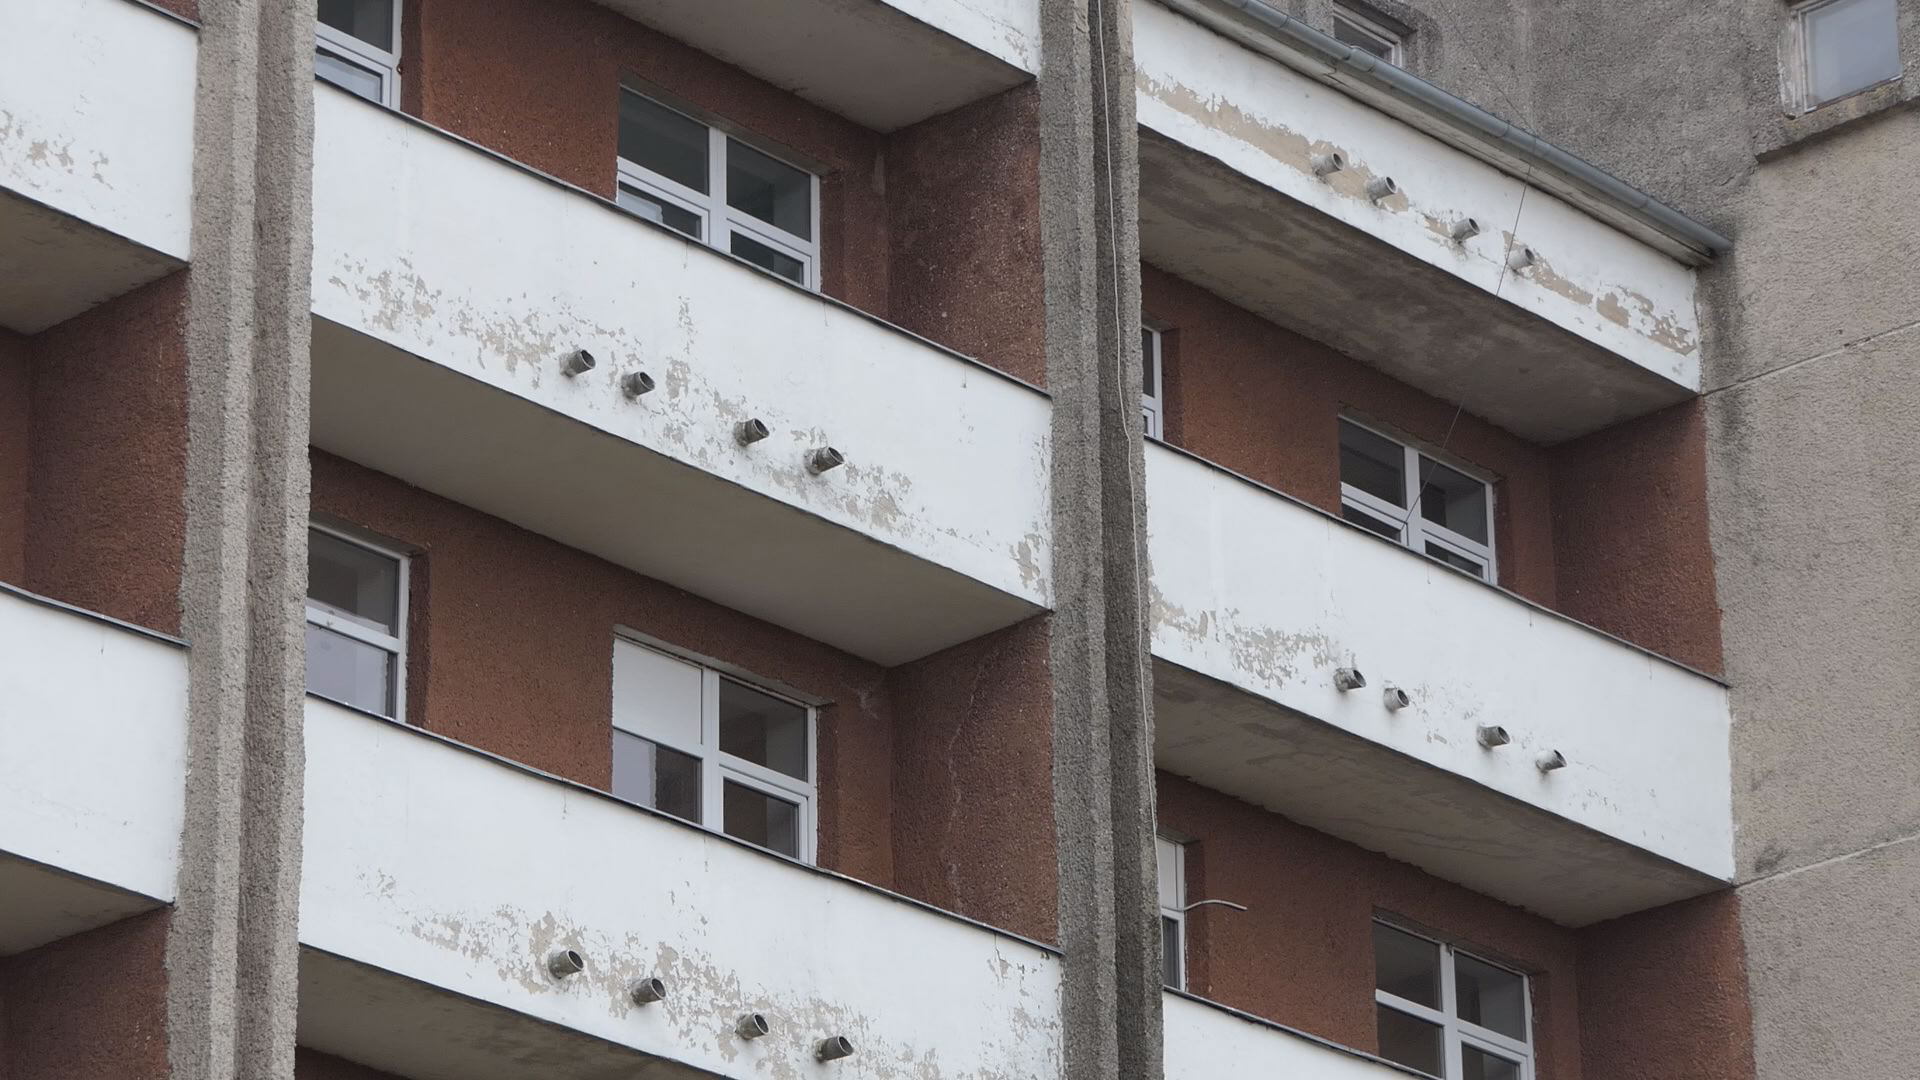 Мовчки відчинив вікно і стрибнув: все, що відомо про самогубство у лікарні під Луцьком (фото 18+, відео)